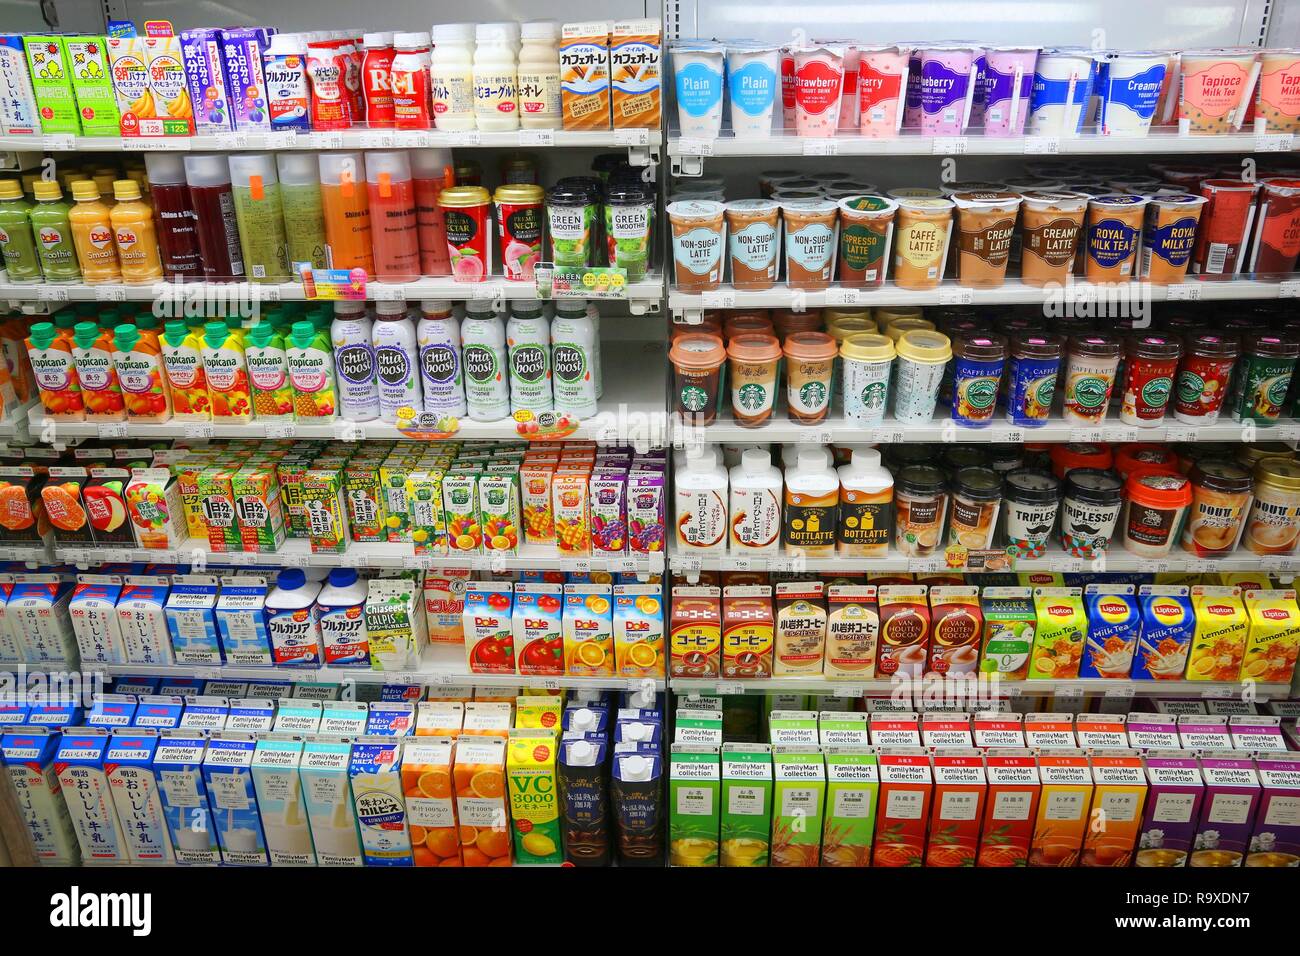 TOKYO, Japan - 29 November 2016: Drink Regal eines Convenience store in  Tokyo, Japan. Es gibt weitere 42.000 Convenience Stores in Japan  Stockfotografie - Alamy